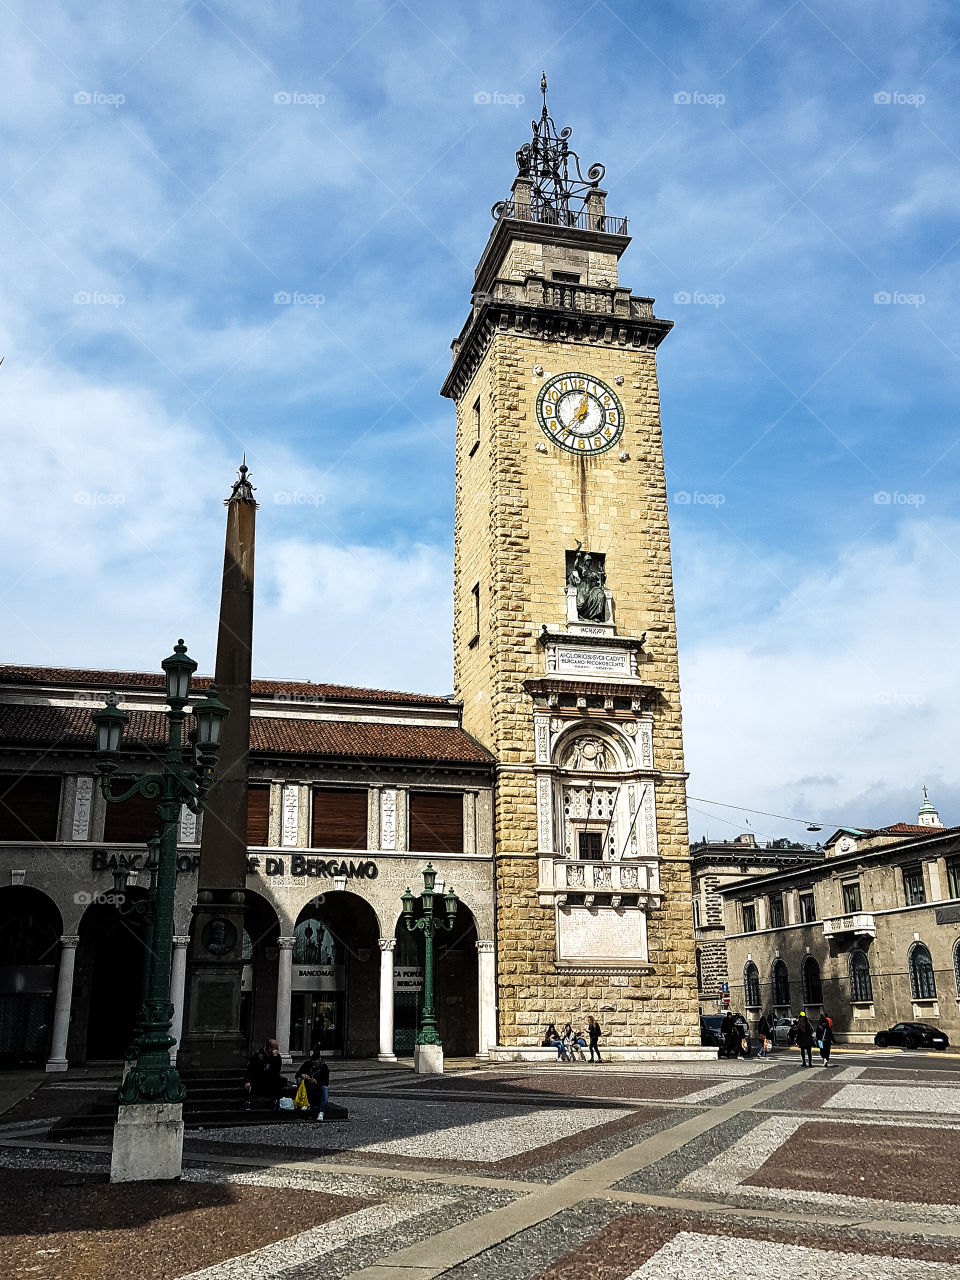 The Beauty of Bergamo, Italy